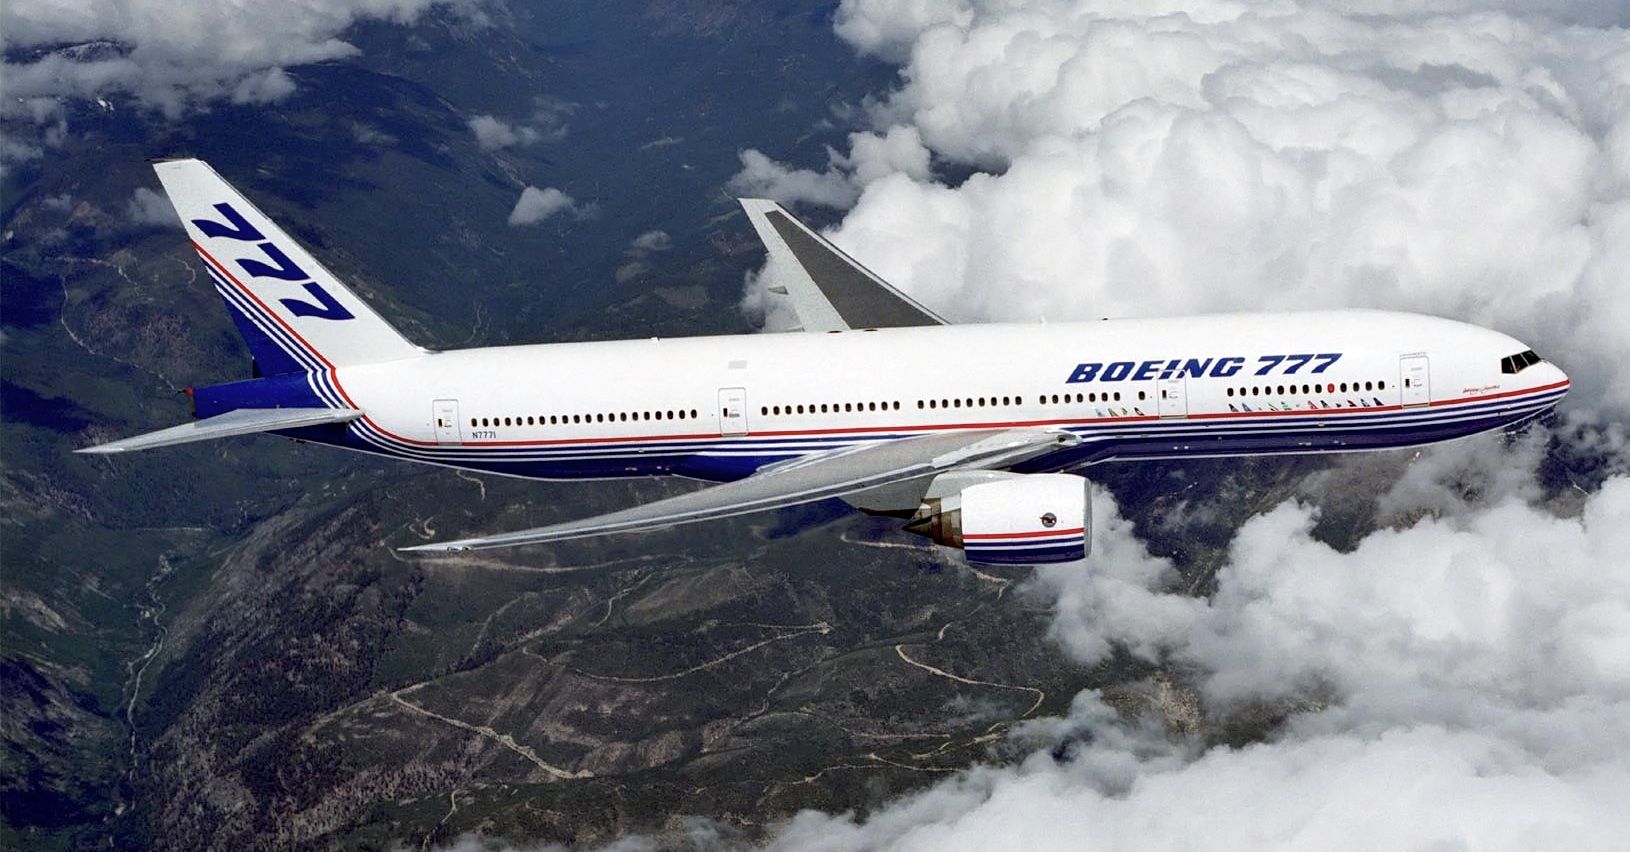 ادعای فوربس: فروش هواپیما به ایران خطرناک است